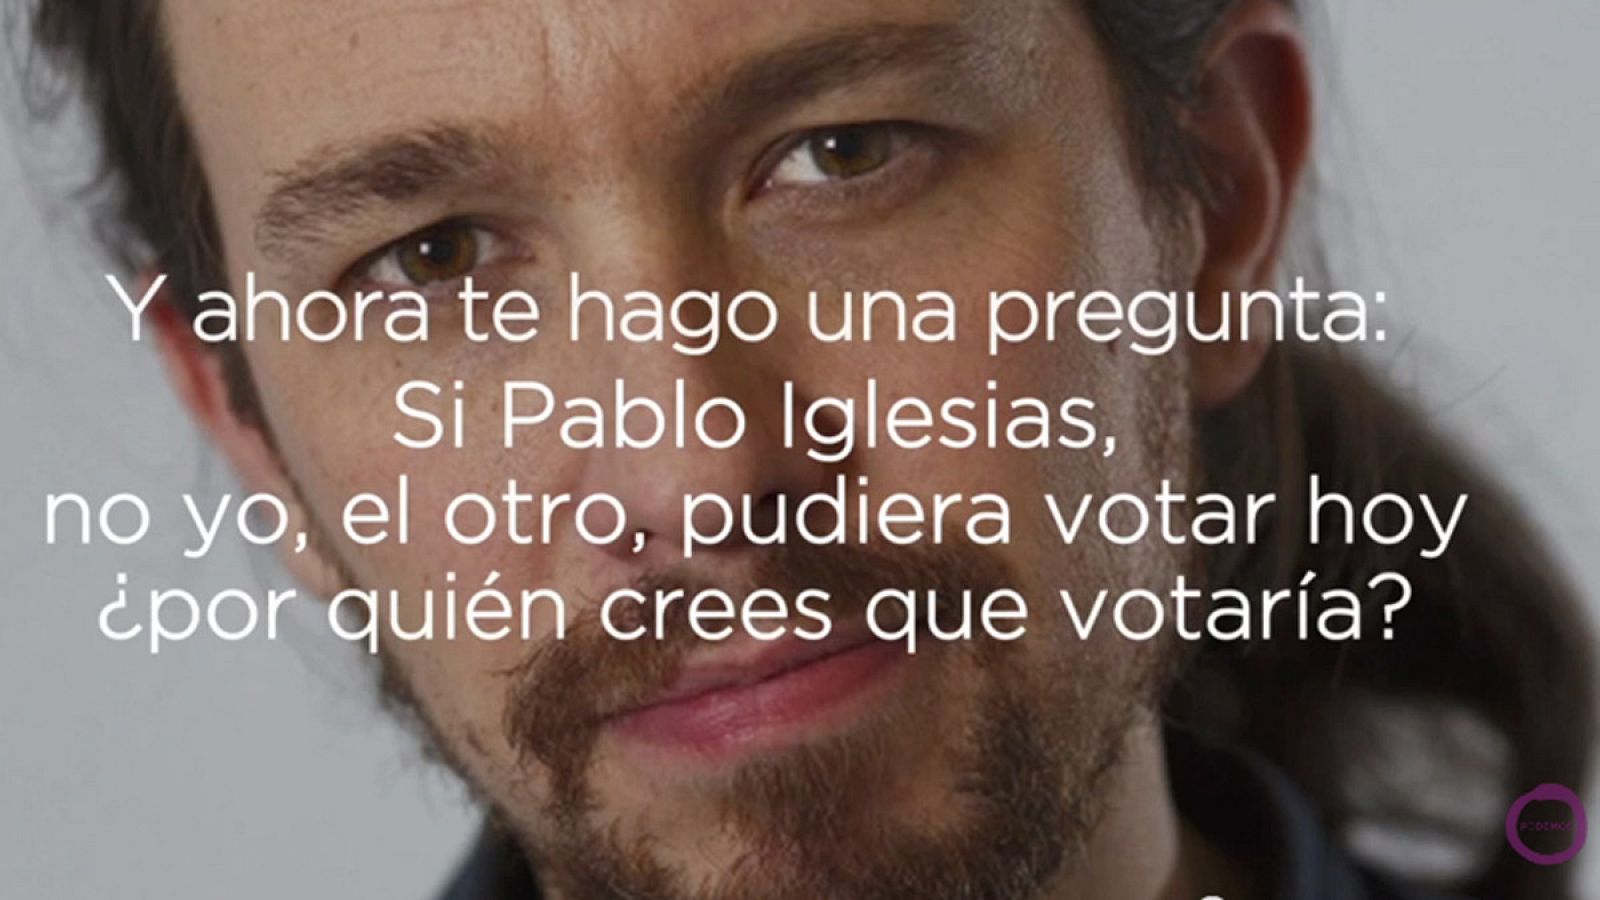 Imagen del vídeo de campaña de Podemos, que juega con la coincidencia con el nombre de su candidato y el fundador del PSOE.